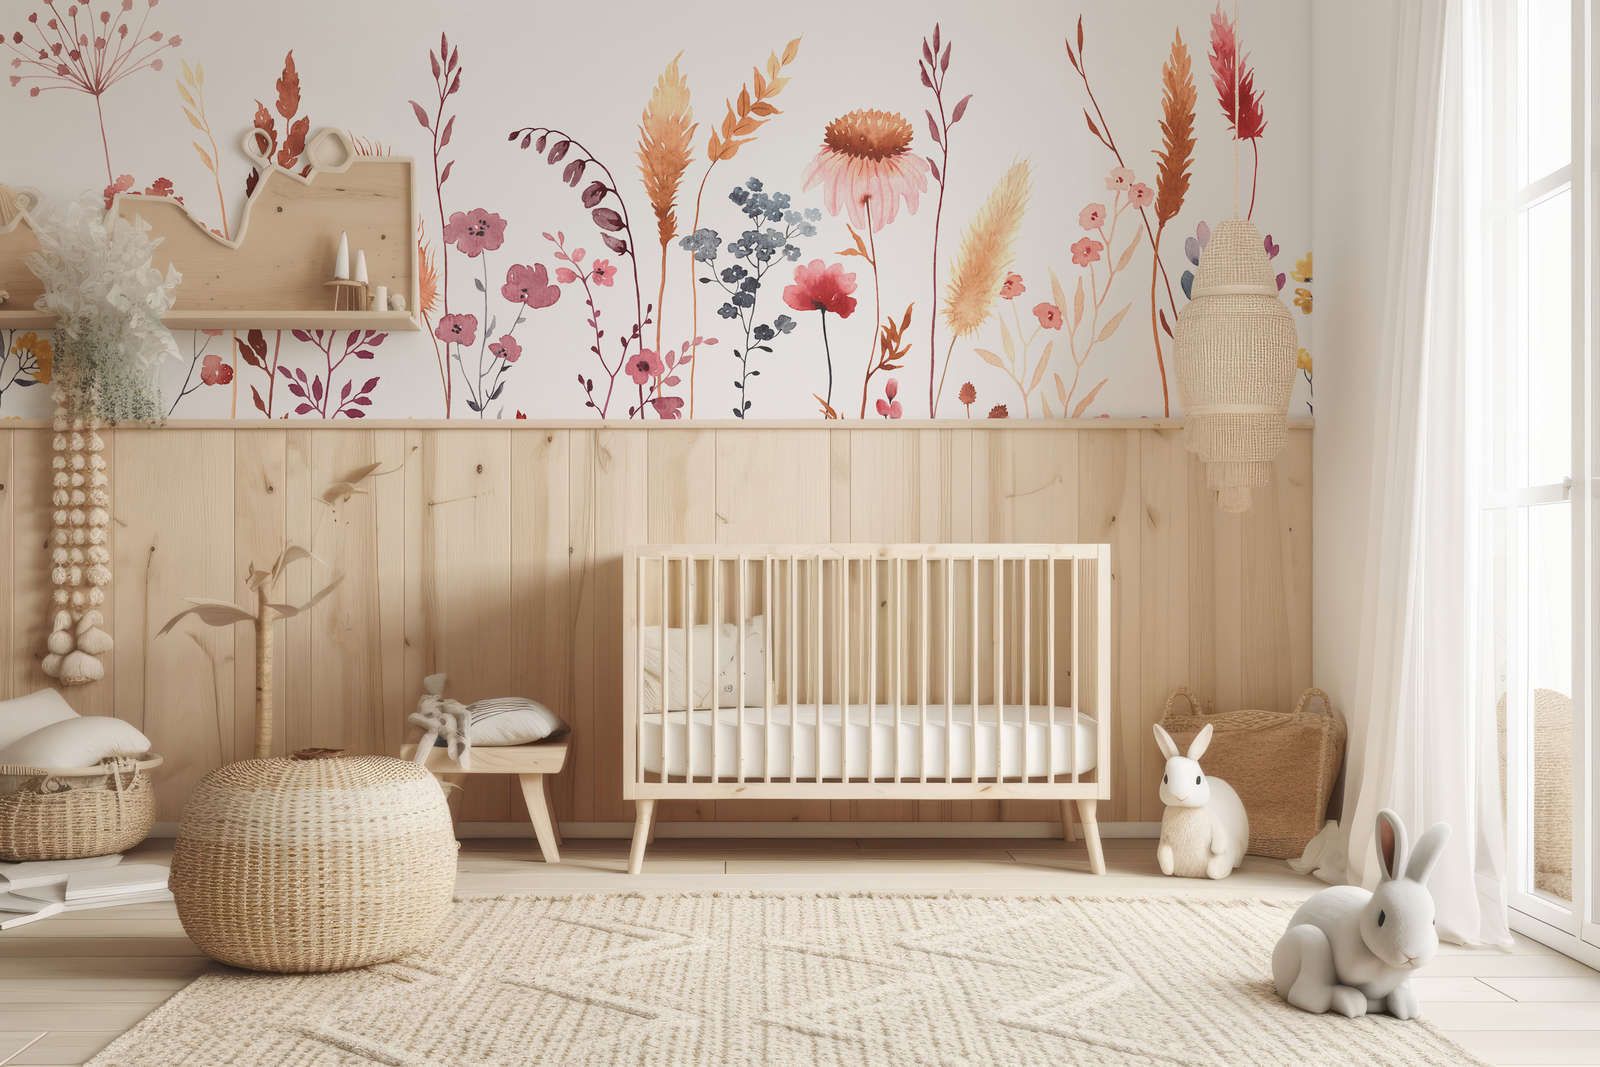             Fototapete fürs Kinderzimmer mit Blättern und Gräsern – Glattes & perlmutt-schimmerndes Vlies
        